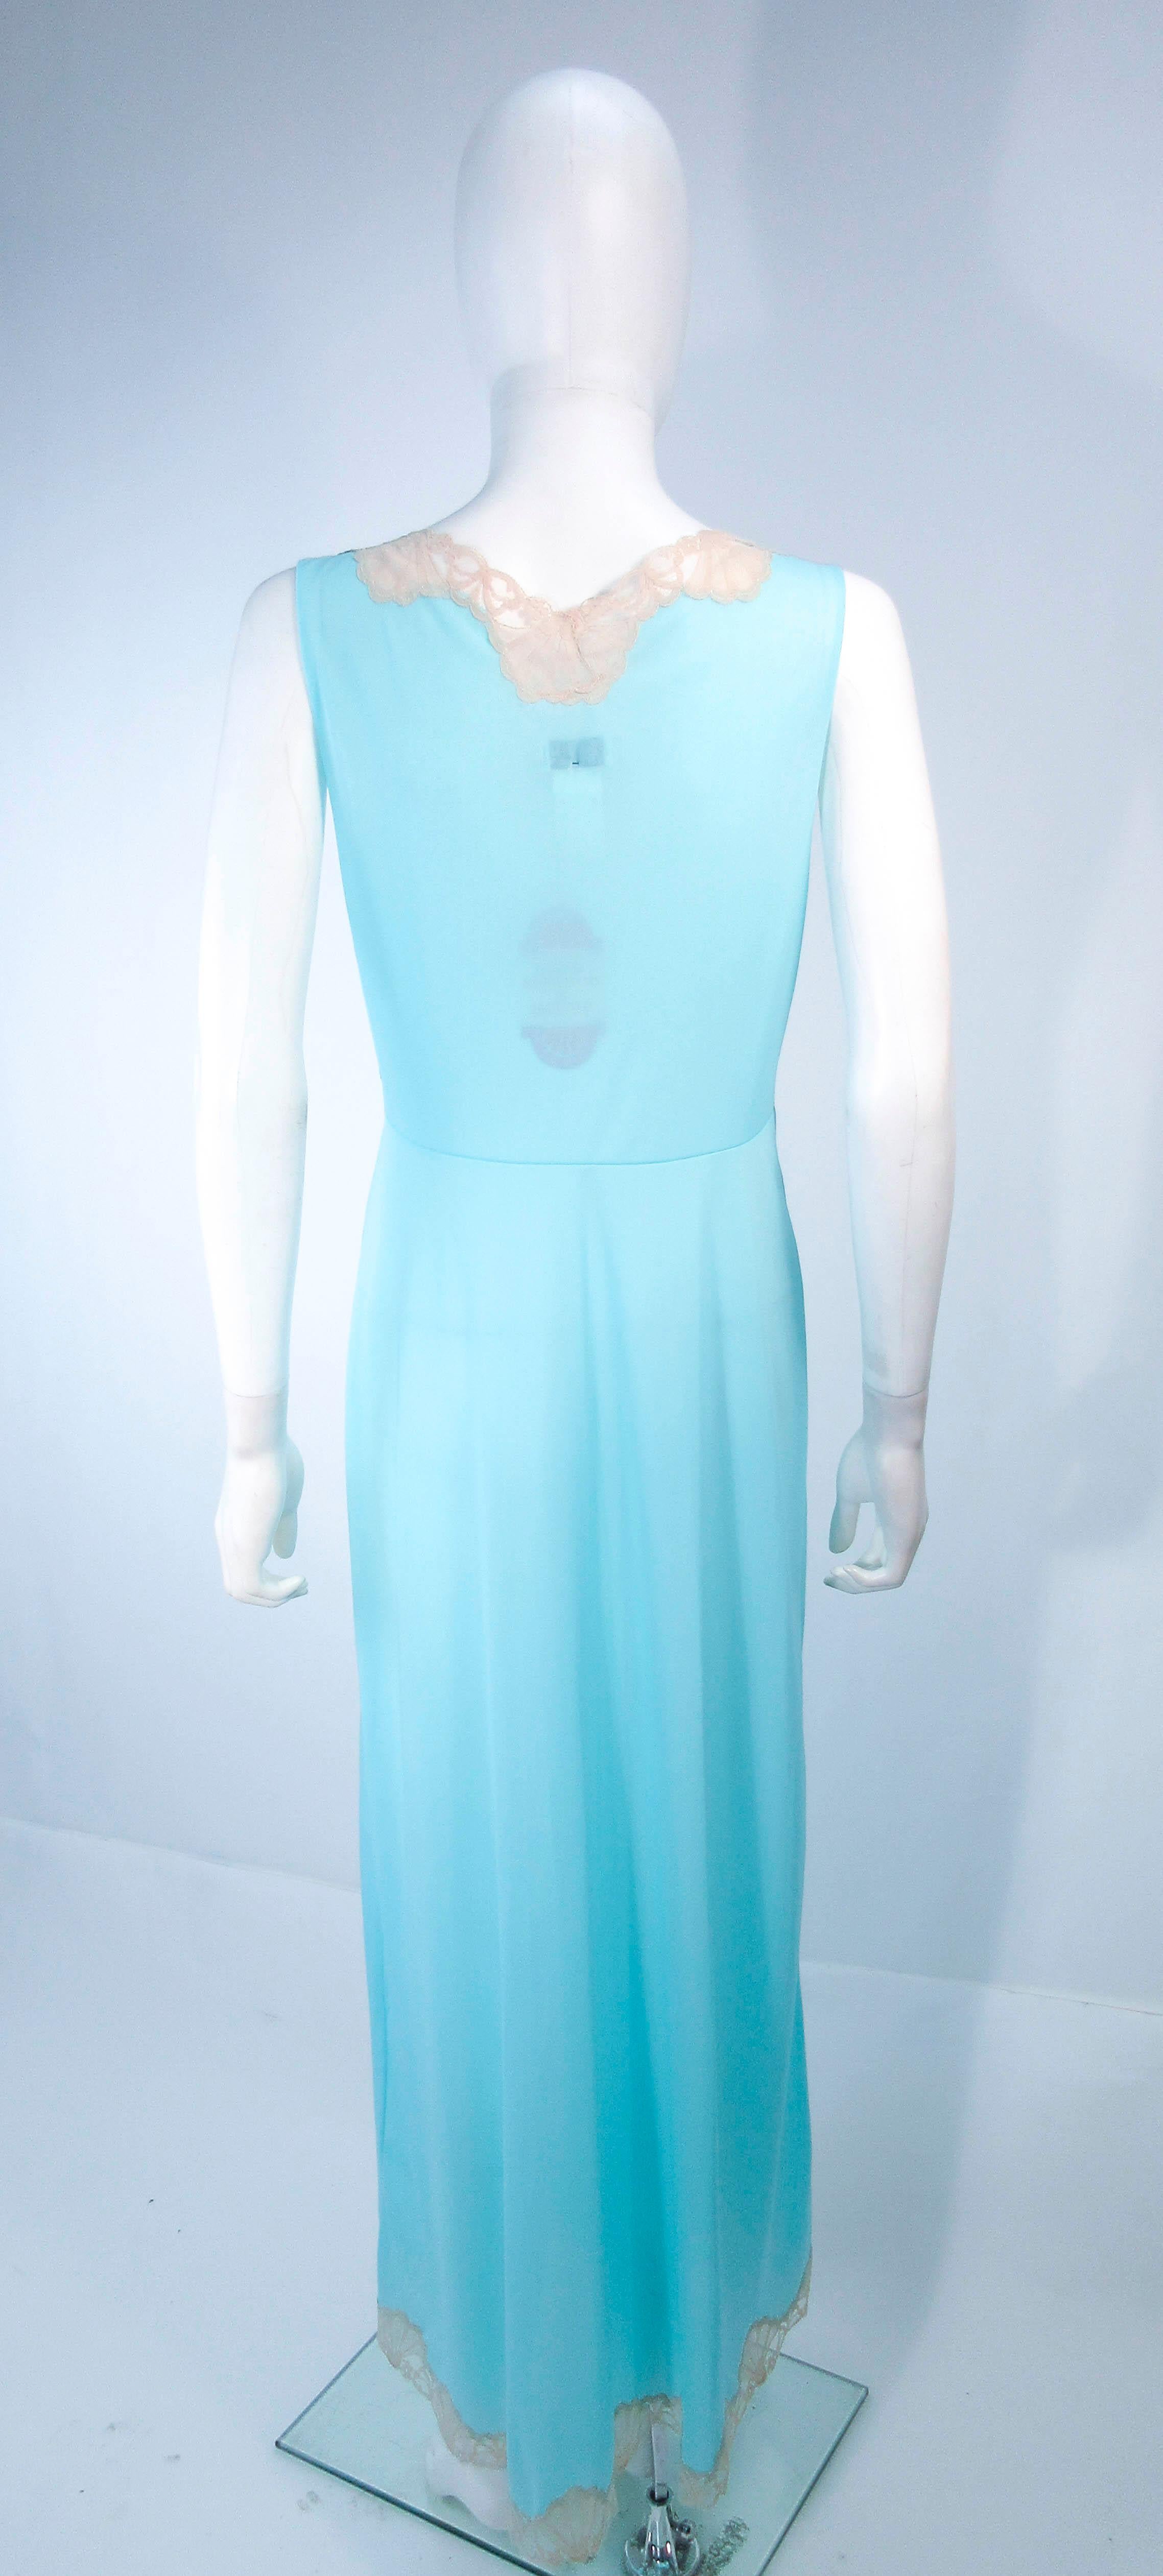 EMILIO PUCCI 'Formfit Rogers' Light Blue Nude Lace Trim Slip Dress NWT Size M 2